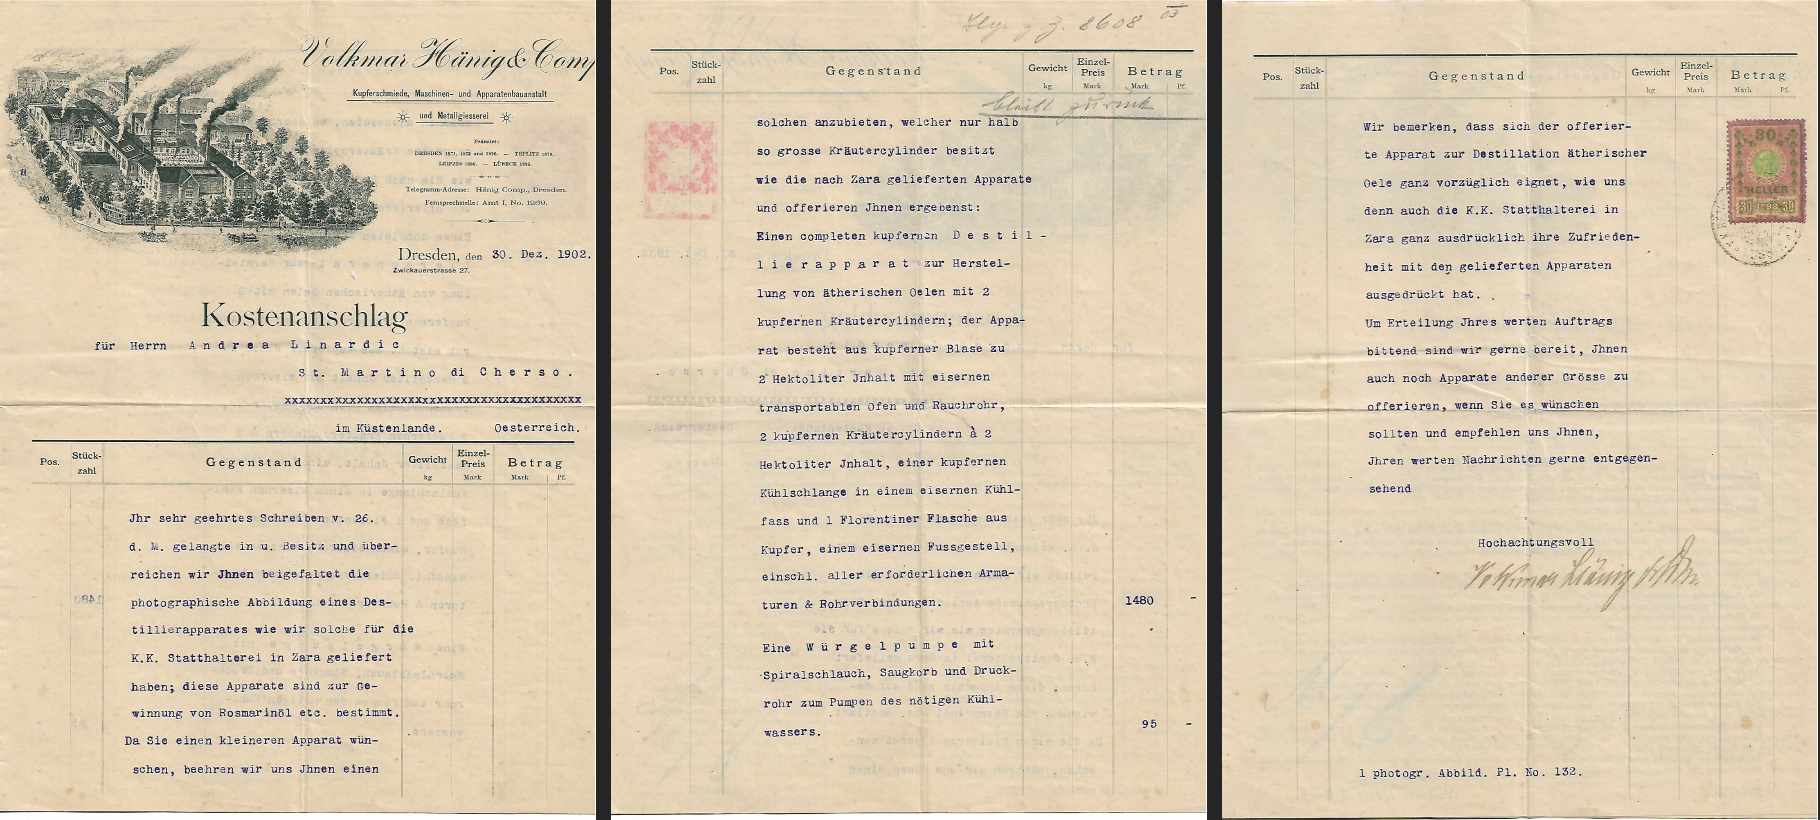 Kostenanschlag vom 1. Dezember 1902 der Firma Hänig für den ersten, 1903 in Betrieb genommenen Destillierapparat. Quelle: Archiv Ivo Saganic, Repro: M. Bäumel